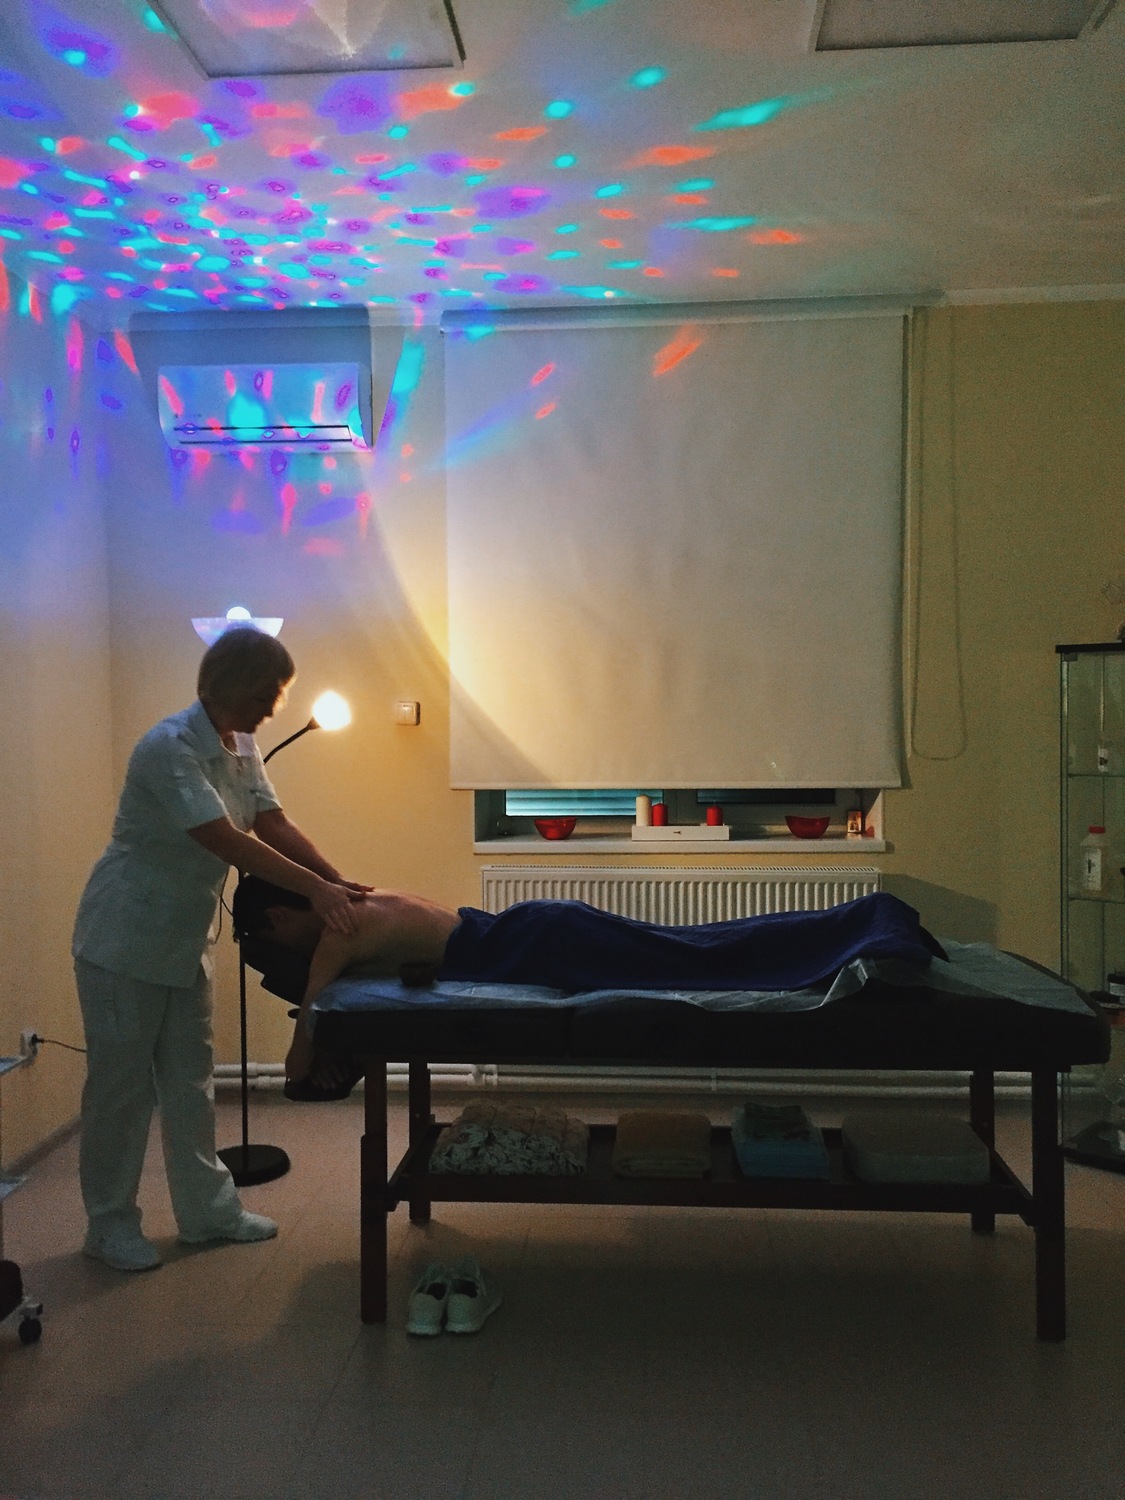 Поставка универсального рентгеновского комплекта в Астрахань